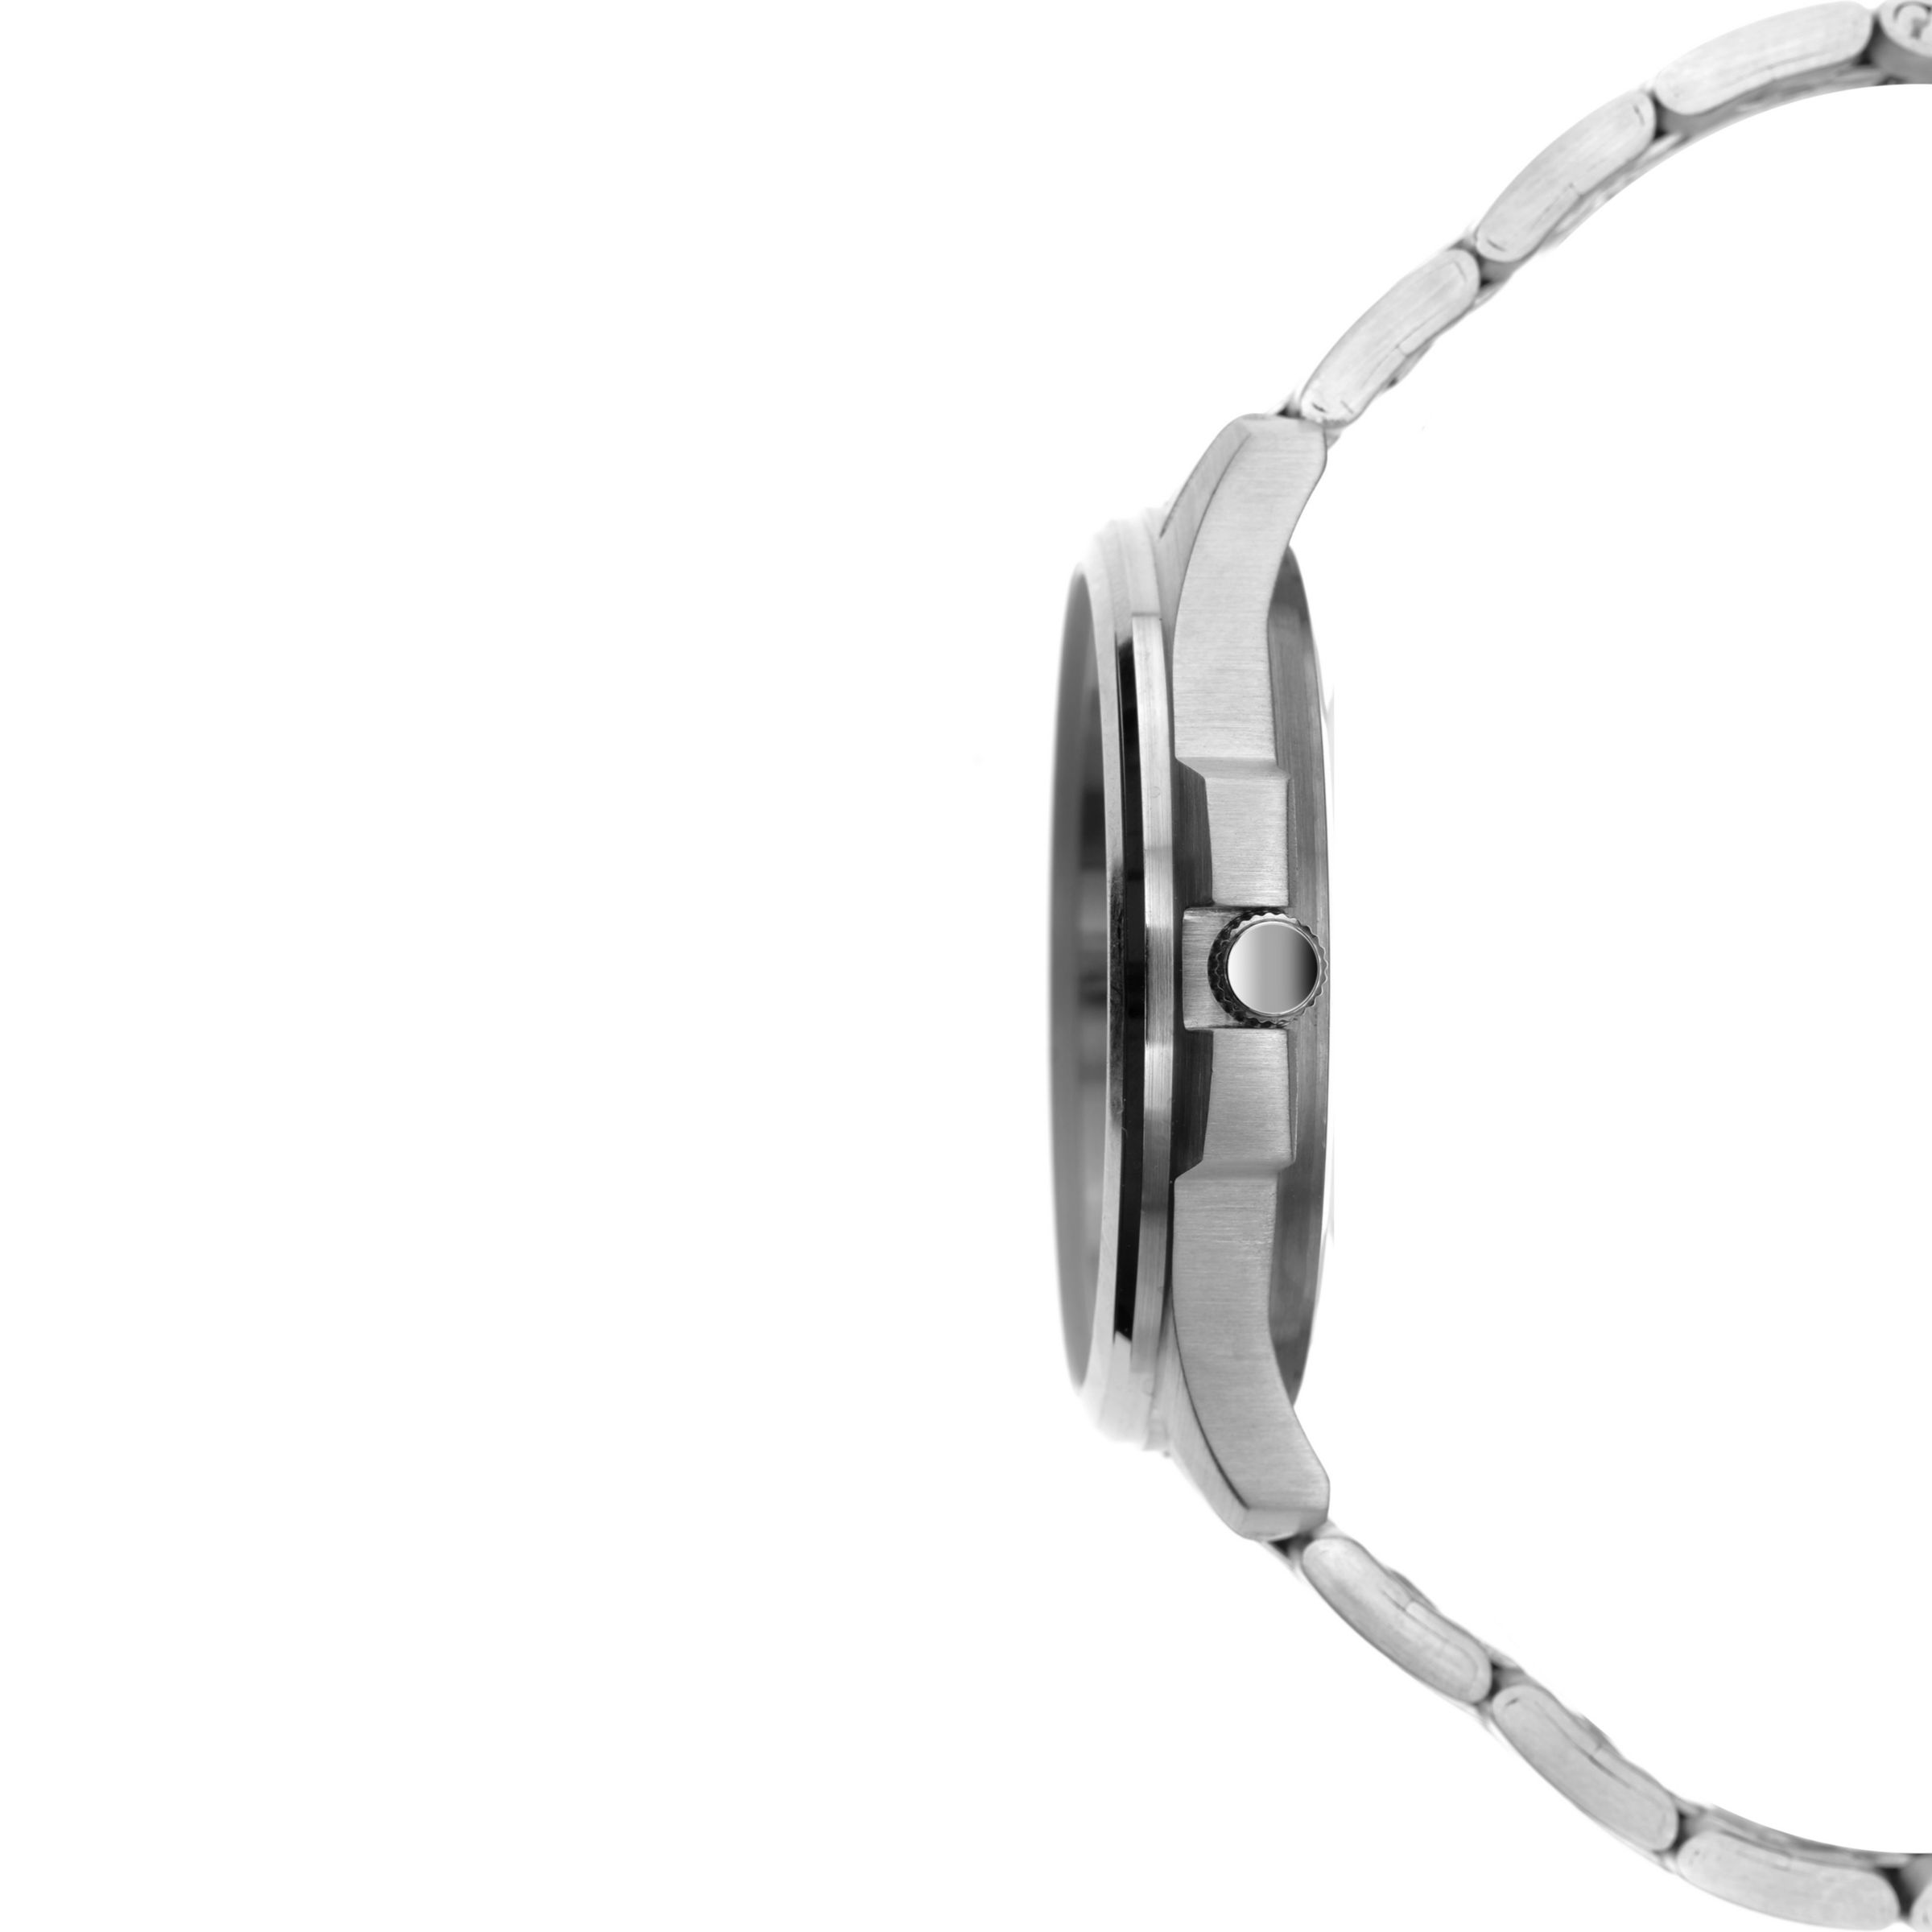 Sekonda 1224.27 Men's Day Date Bracelet Strap Watch, Silver/Blue